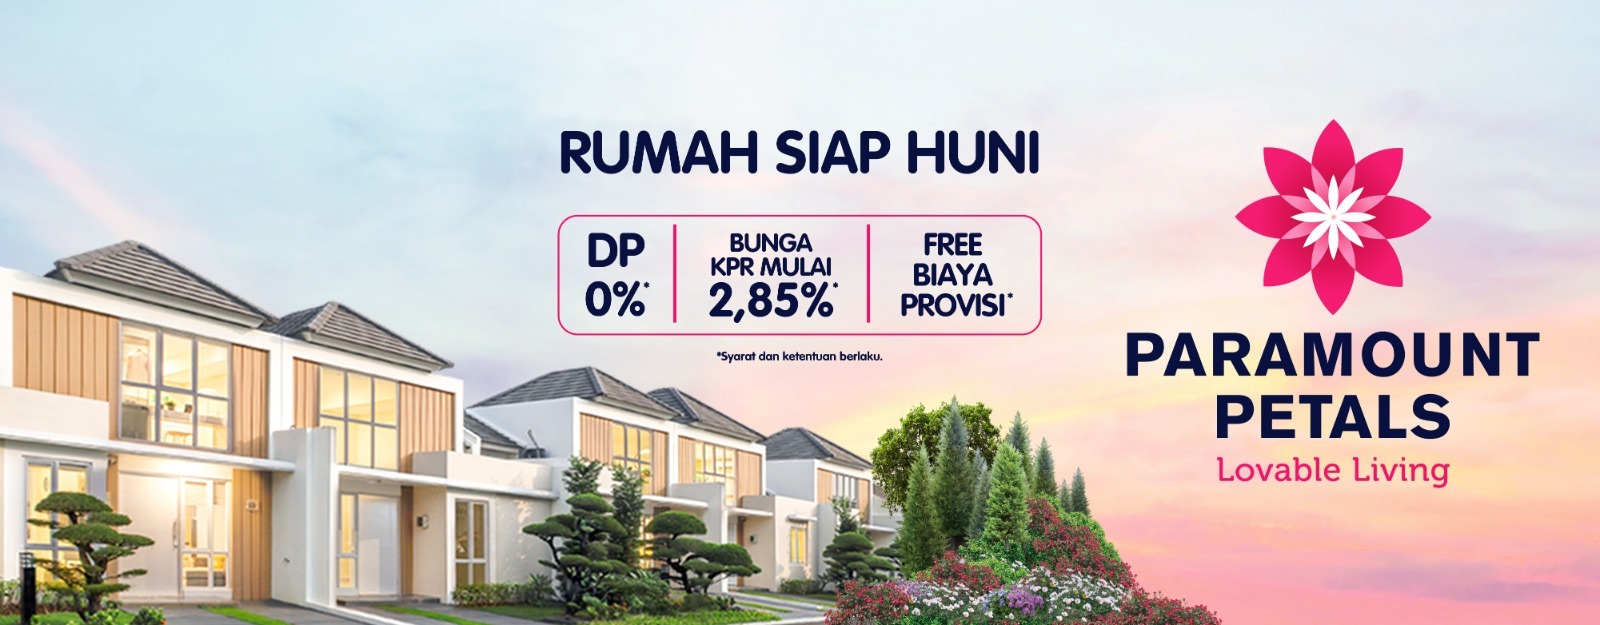 Promo Rumah SIap Huni